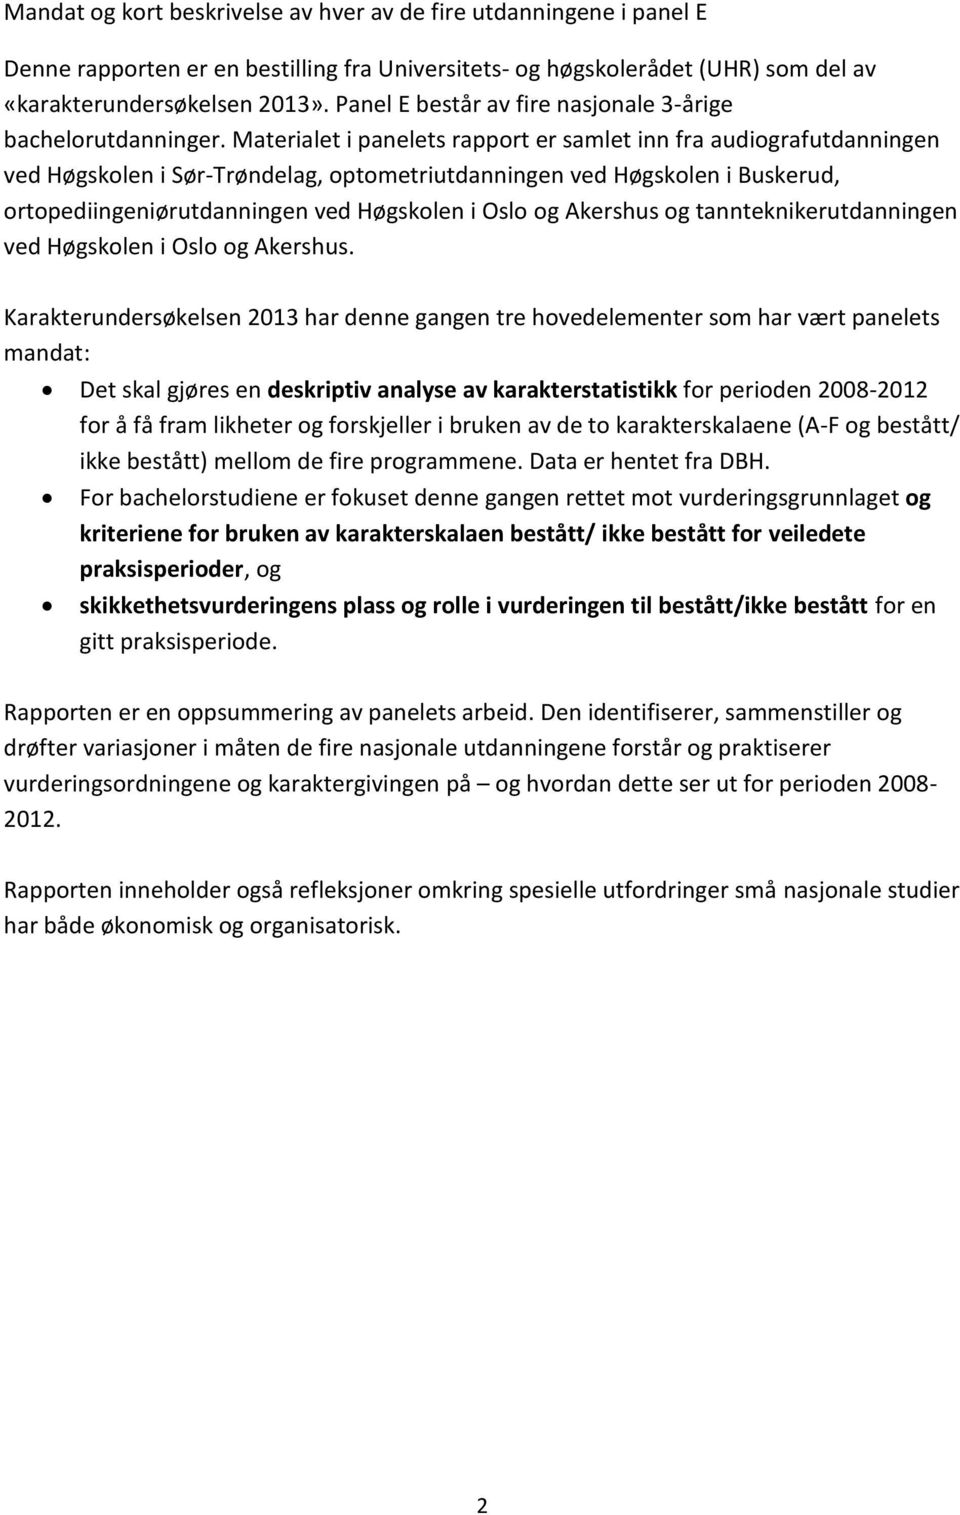 Materialet i panelets rapport er samlet inn fra audiografutdanningen ved Høgskolen i Sør-Trøndelag, optometriutdanningen ved Høgskolen i Buskerud, ortopediingeniørutdanningen ved Høgskolen i Oslo og